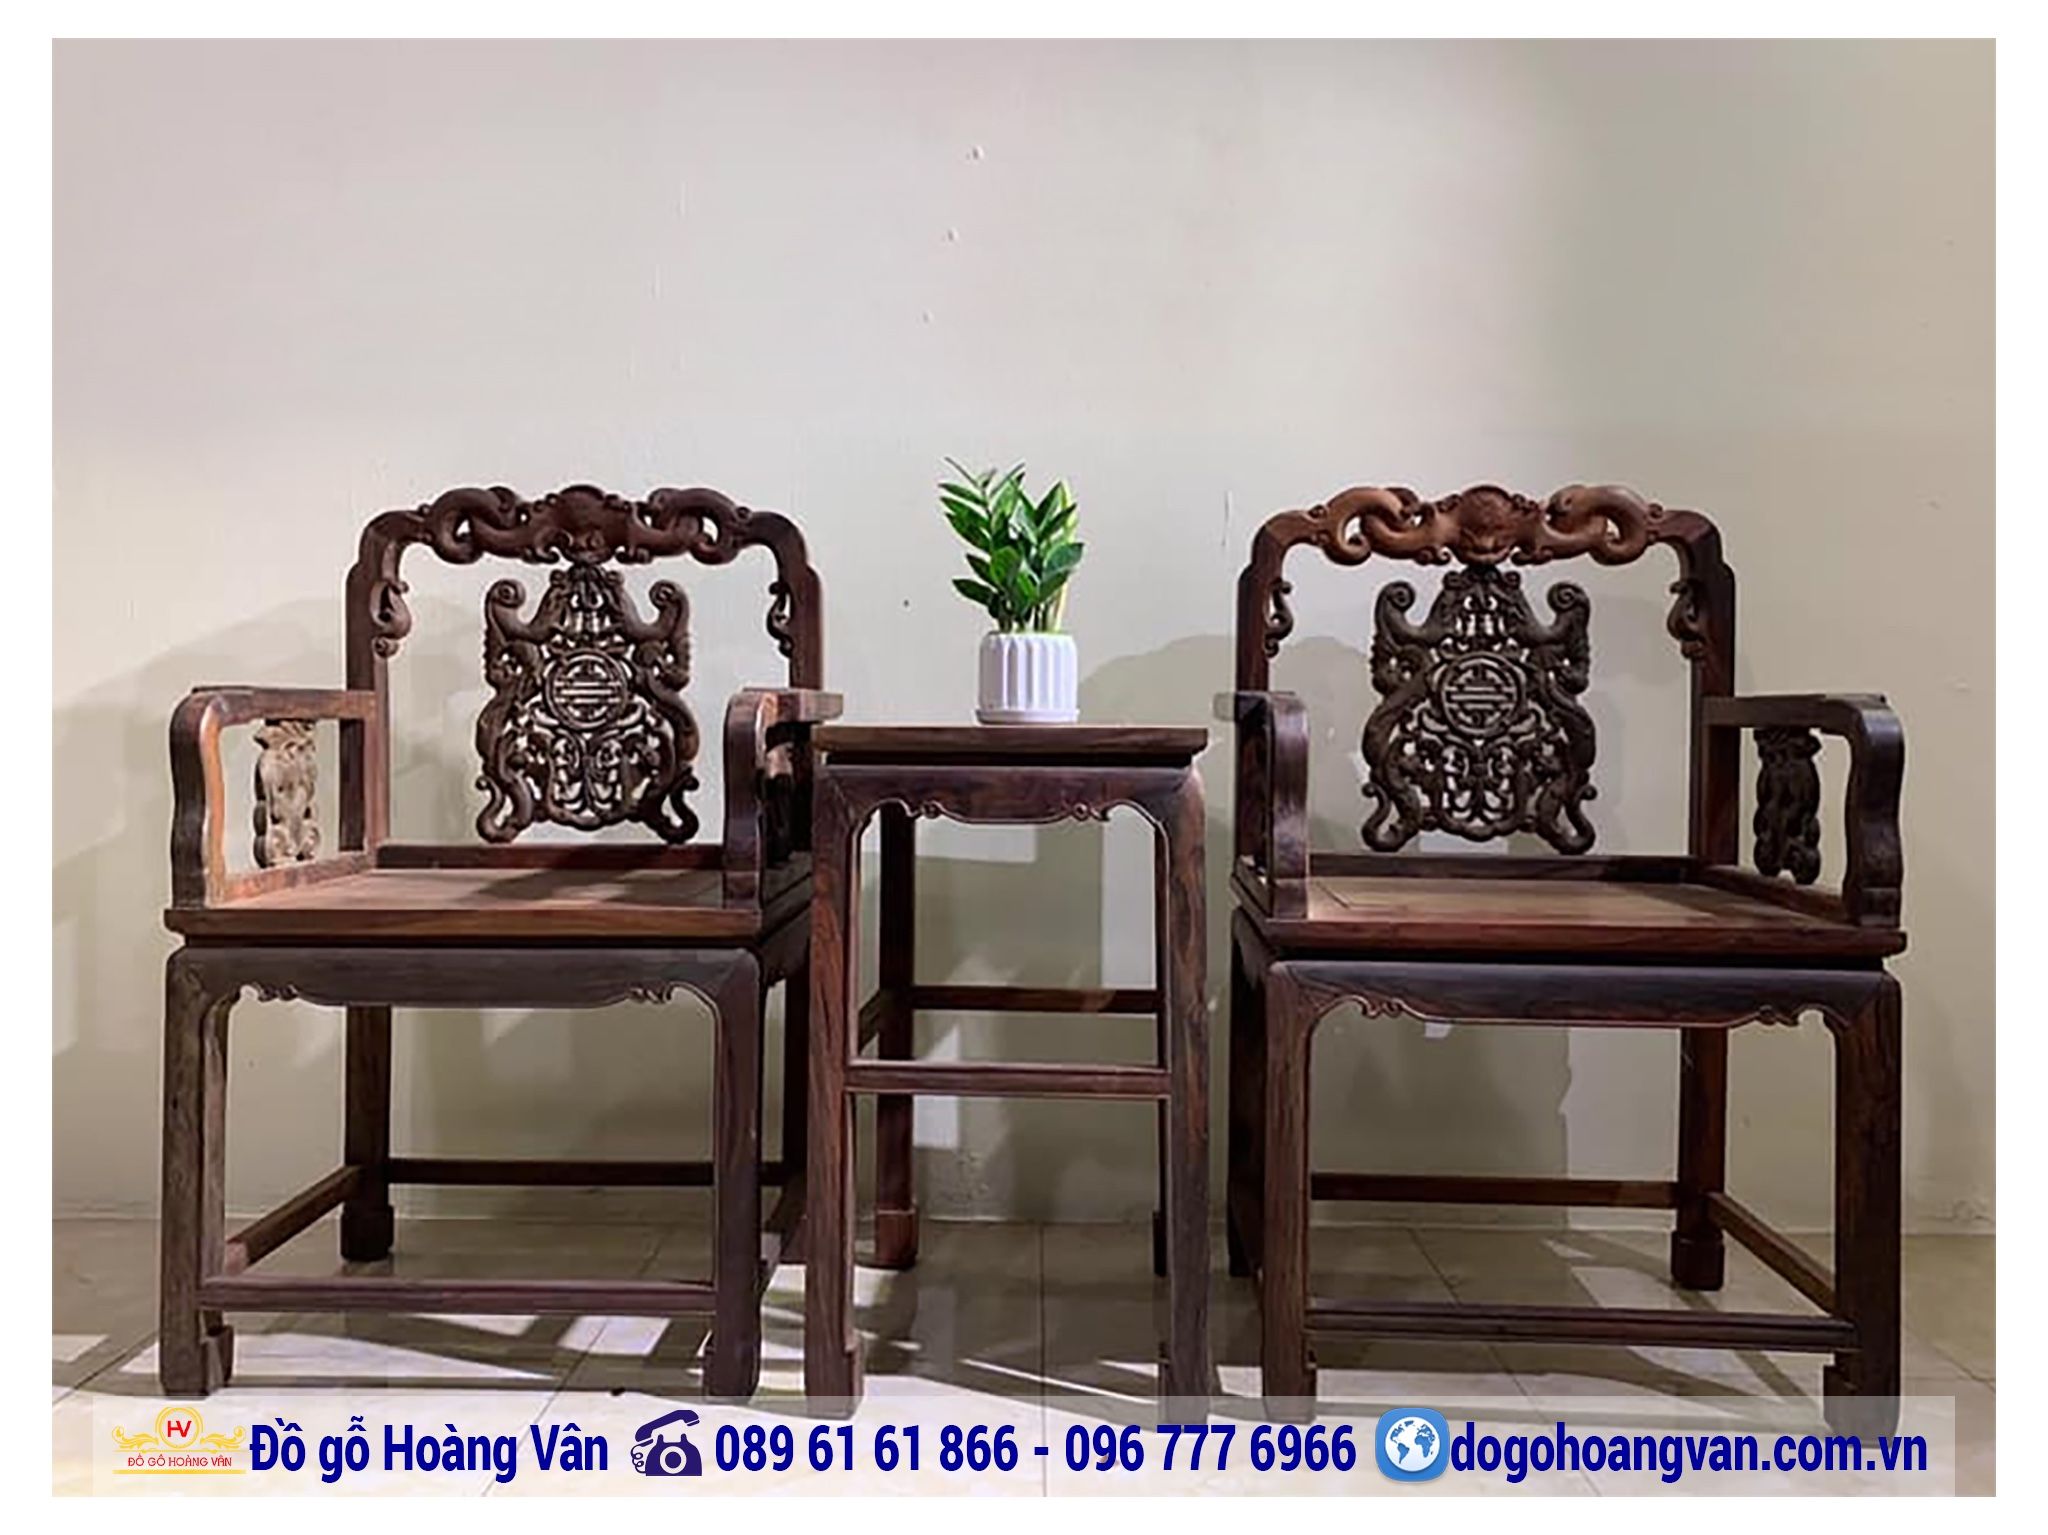 Nơi Bán Bộ Bàn Ghế Phòng Khách Đẹp Tại Hà Nội BG346 – Đồ gỗ Hoàng Vân